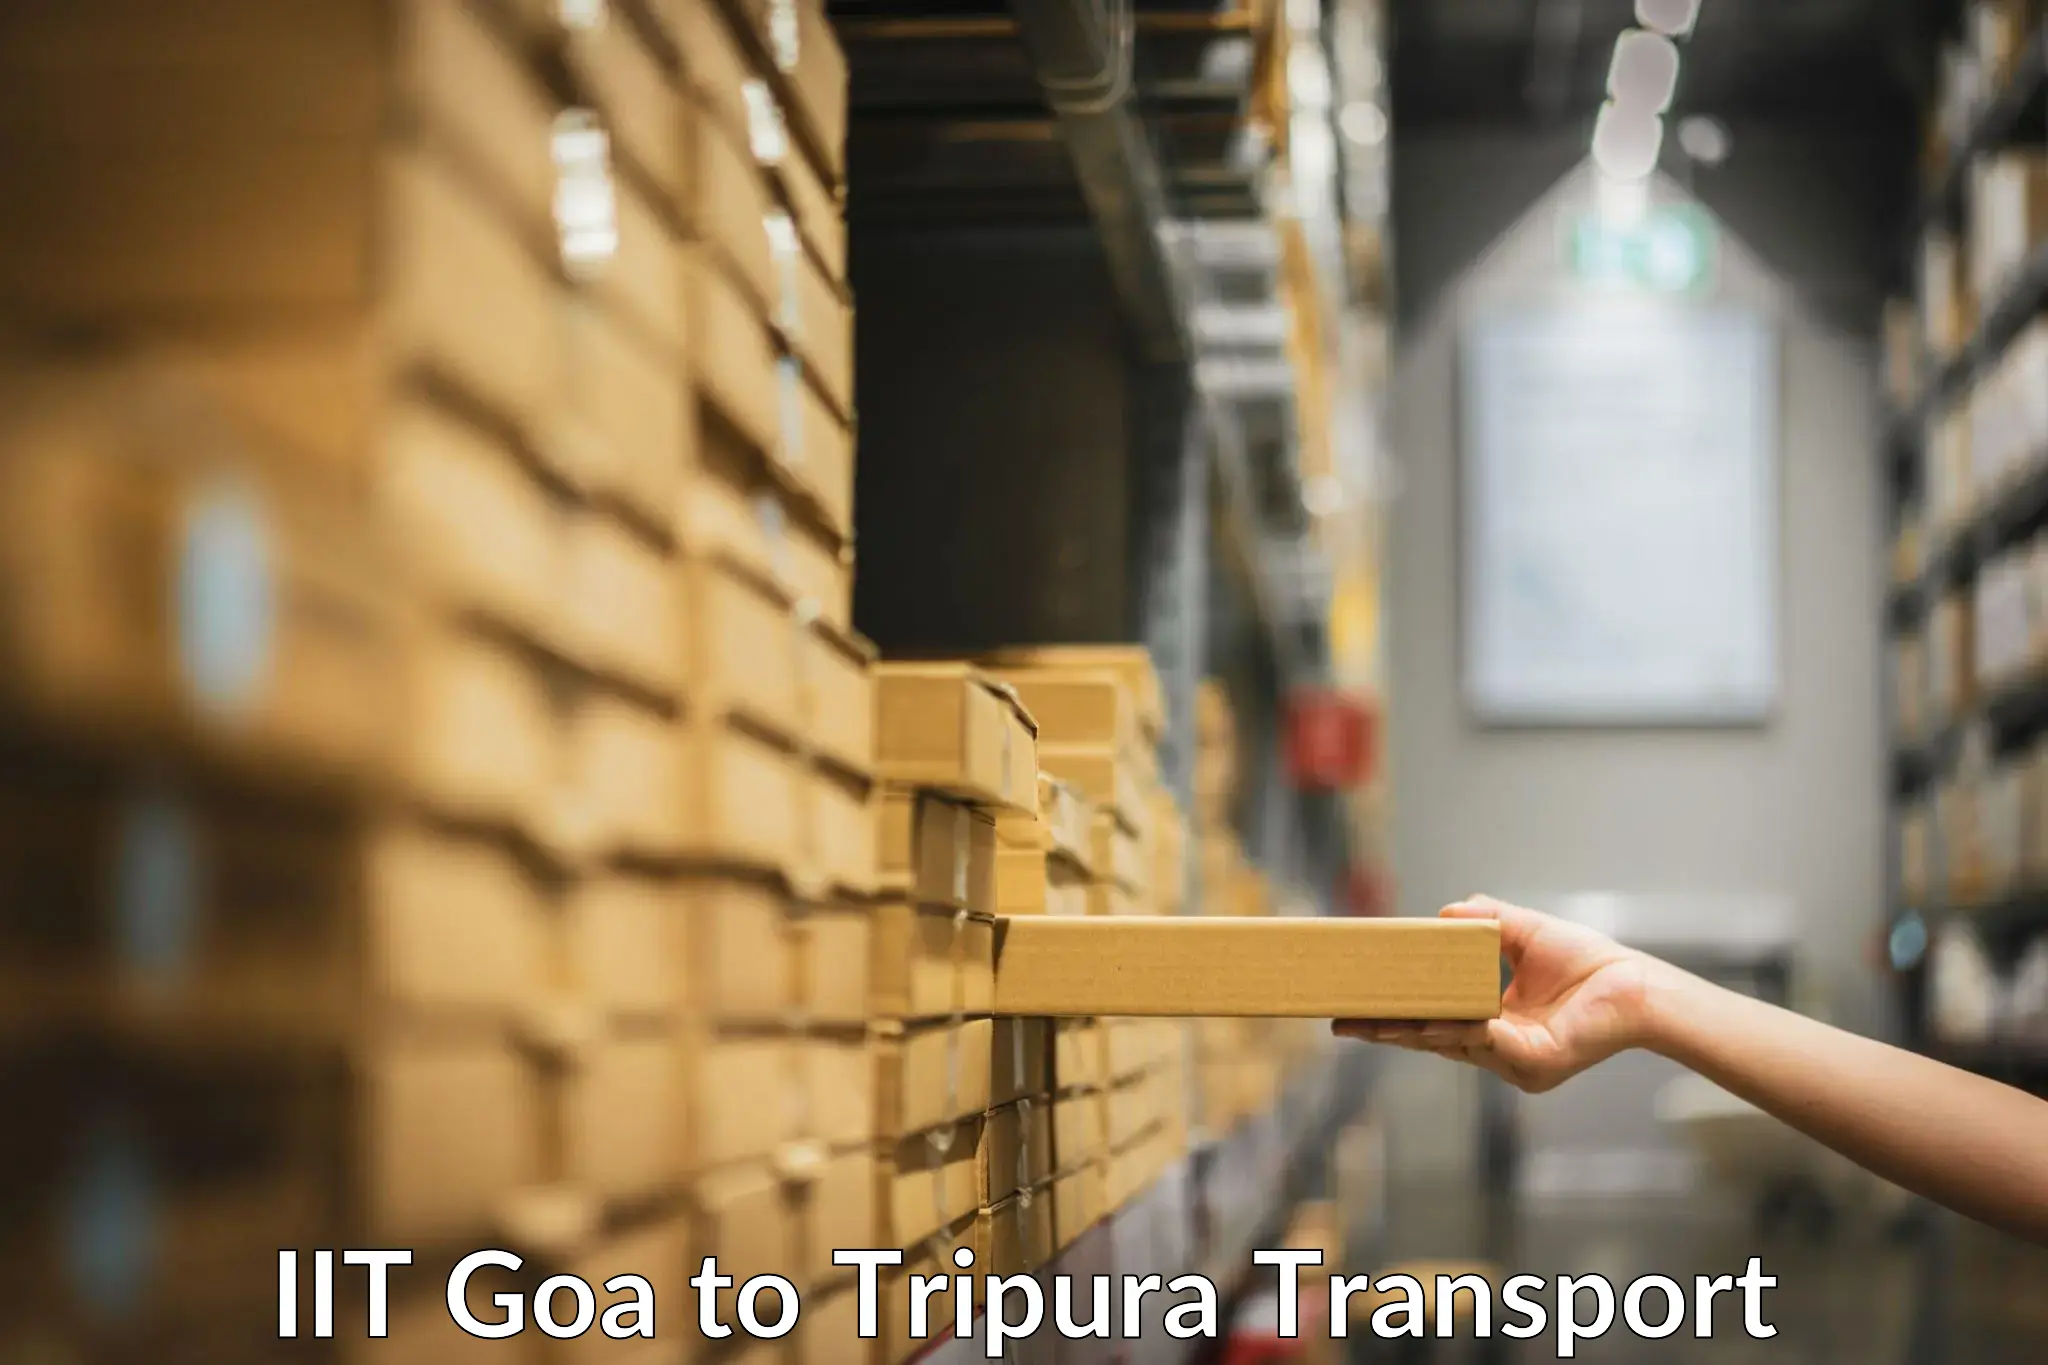 Nearby transport service IIT Goa to Agartala